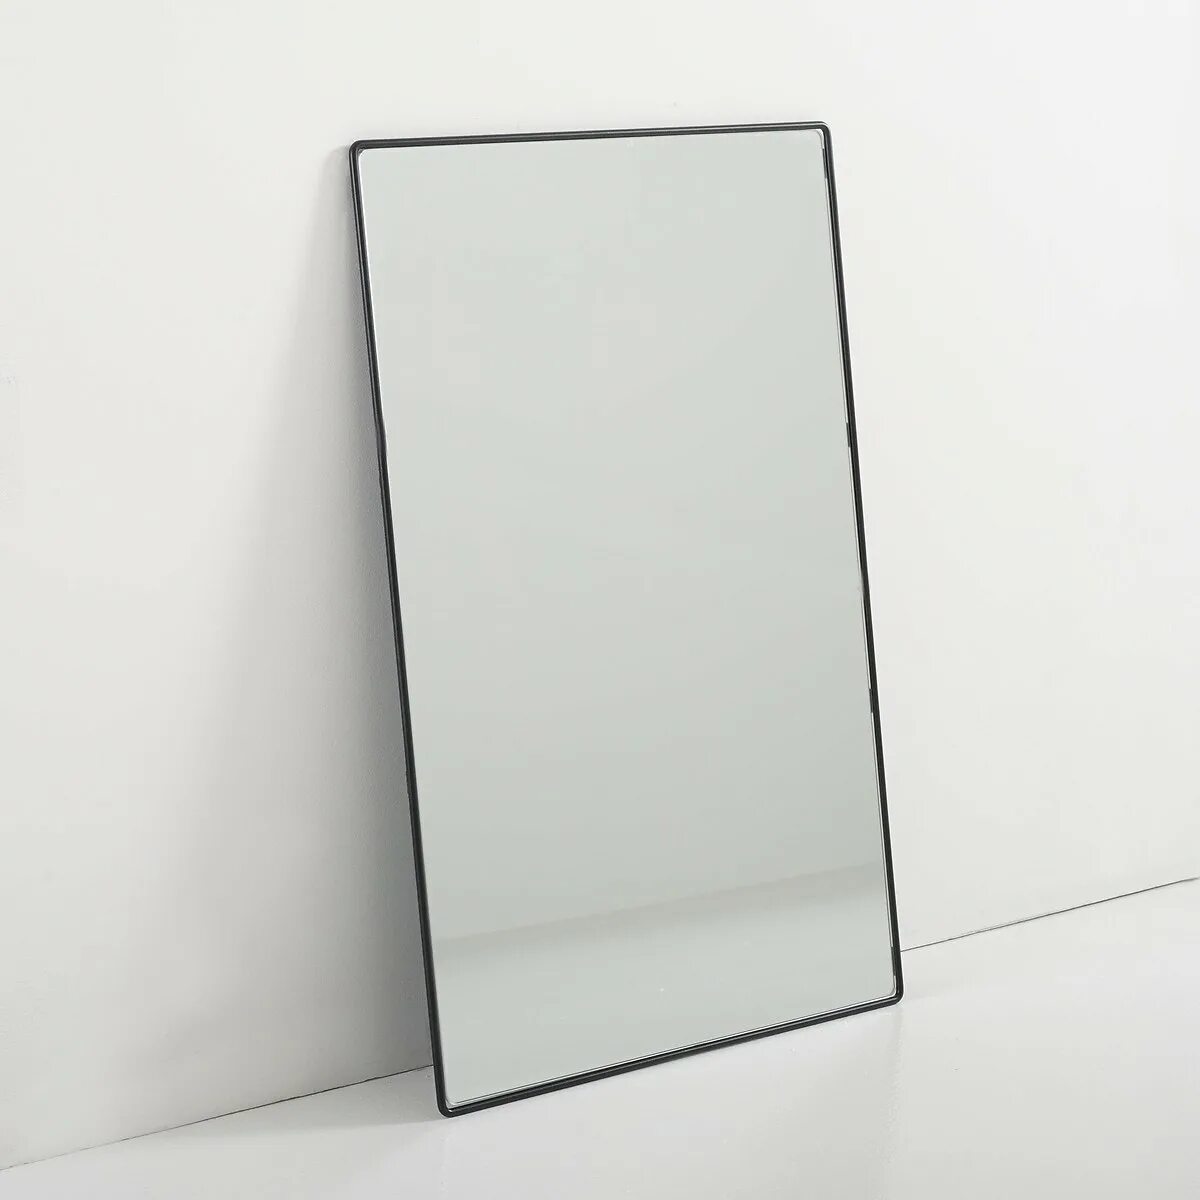 Зеркало la Redoute. Зеркало прямоугольное настенное. Зеркало в черной металлической раме. Зеркало в тонкой рамке.